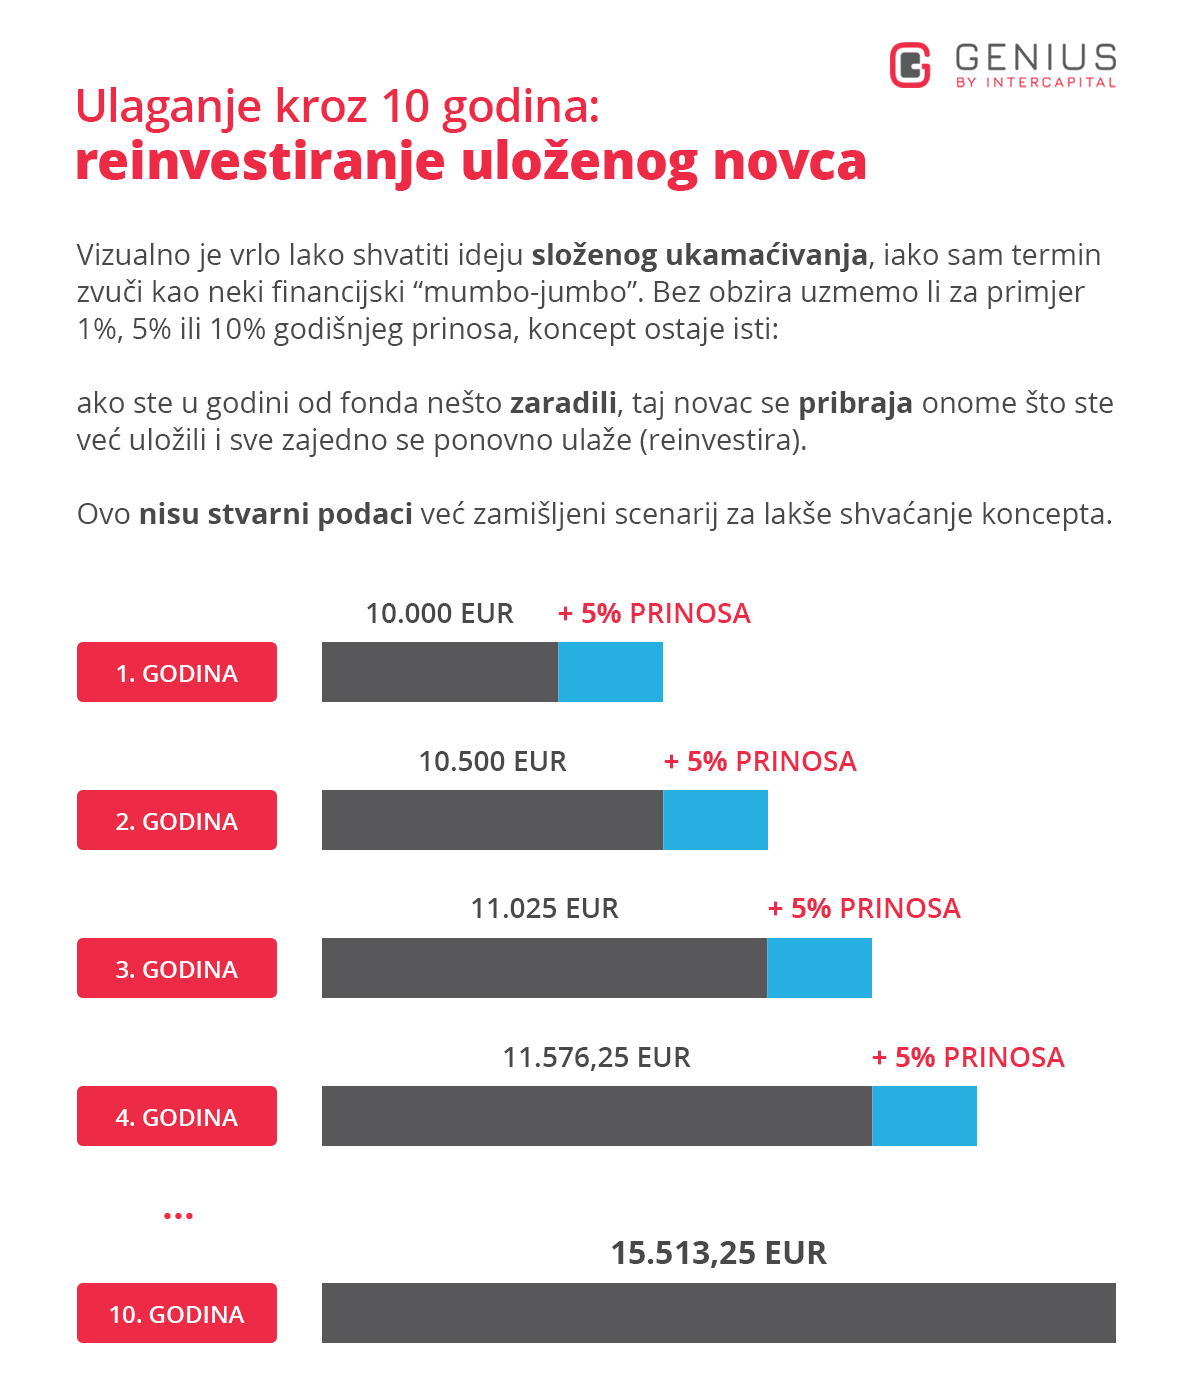 investicijski fondovi - primjer složenog ukamaćivanja - investitor ulaže na 10 godina, počinje sa 10.000 eura i svake godine ostvaruje prinos od 5%